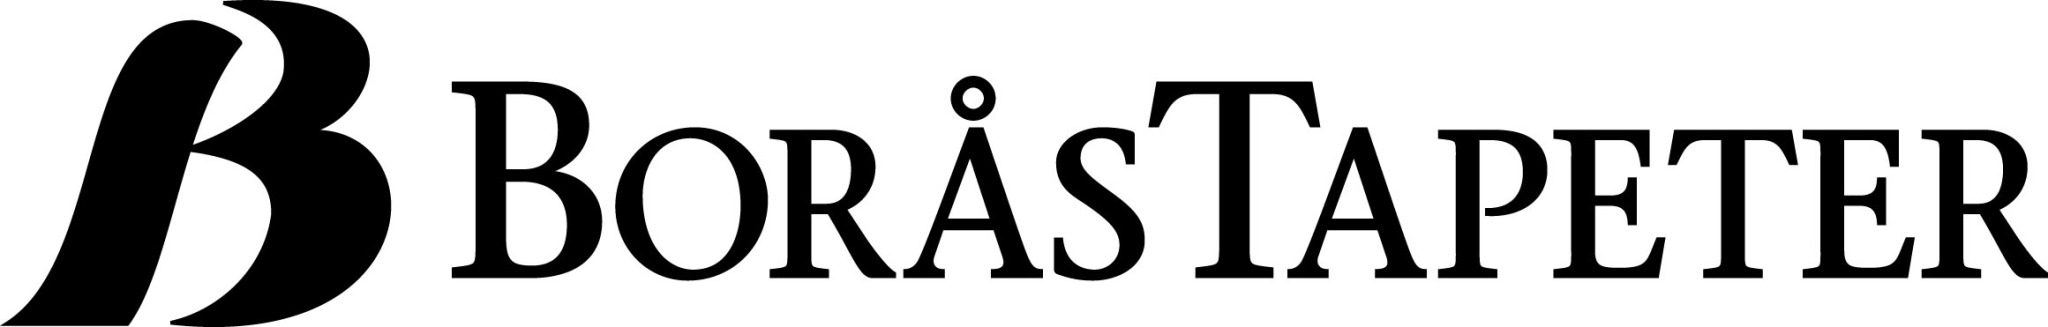 borastapeter-logo.jpg